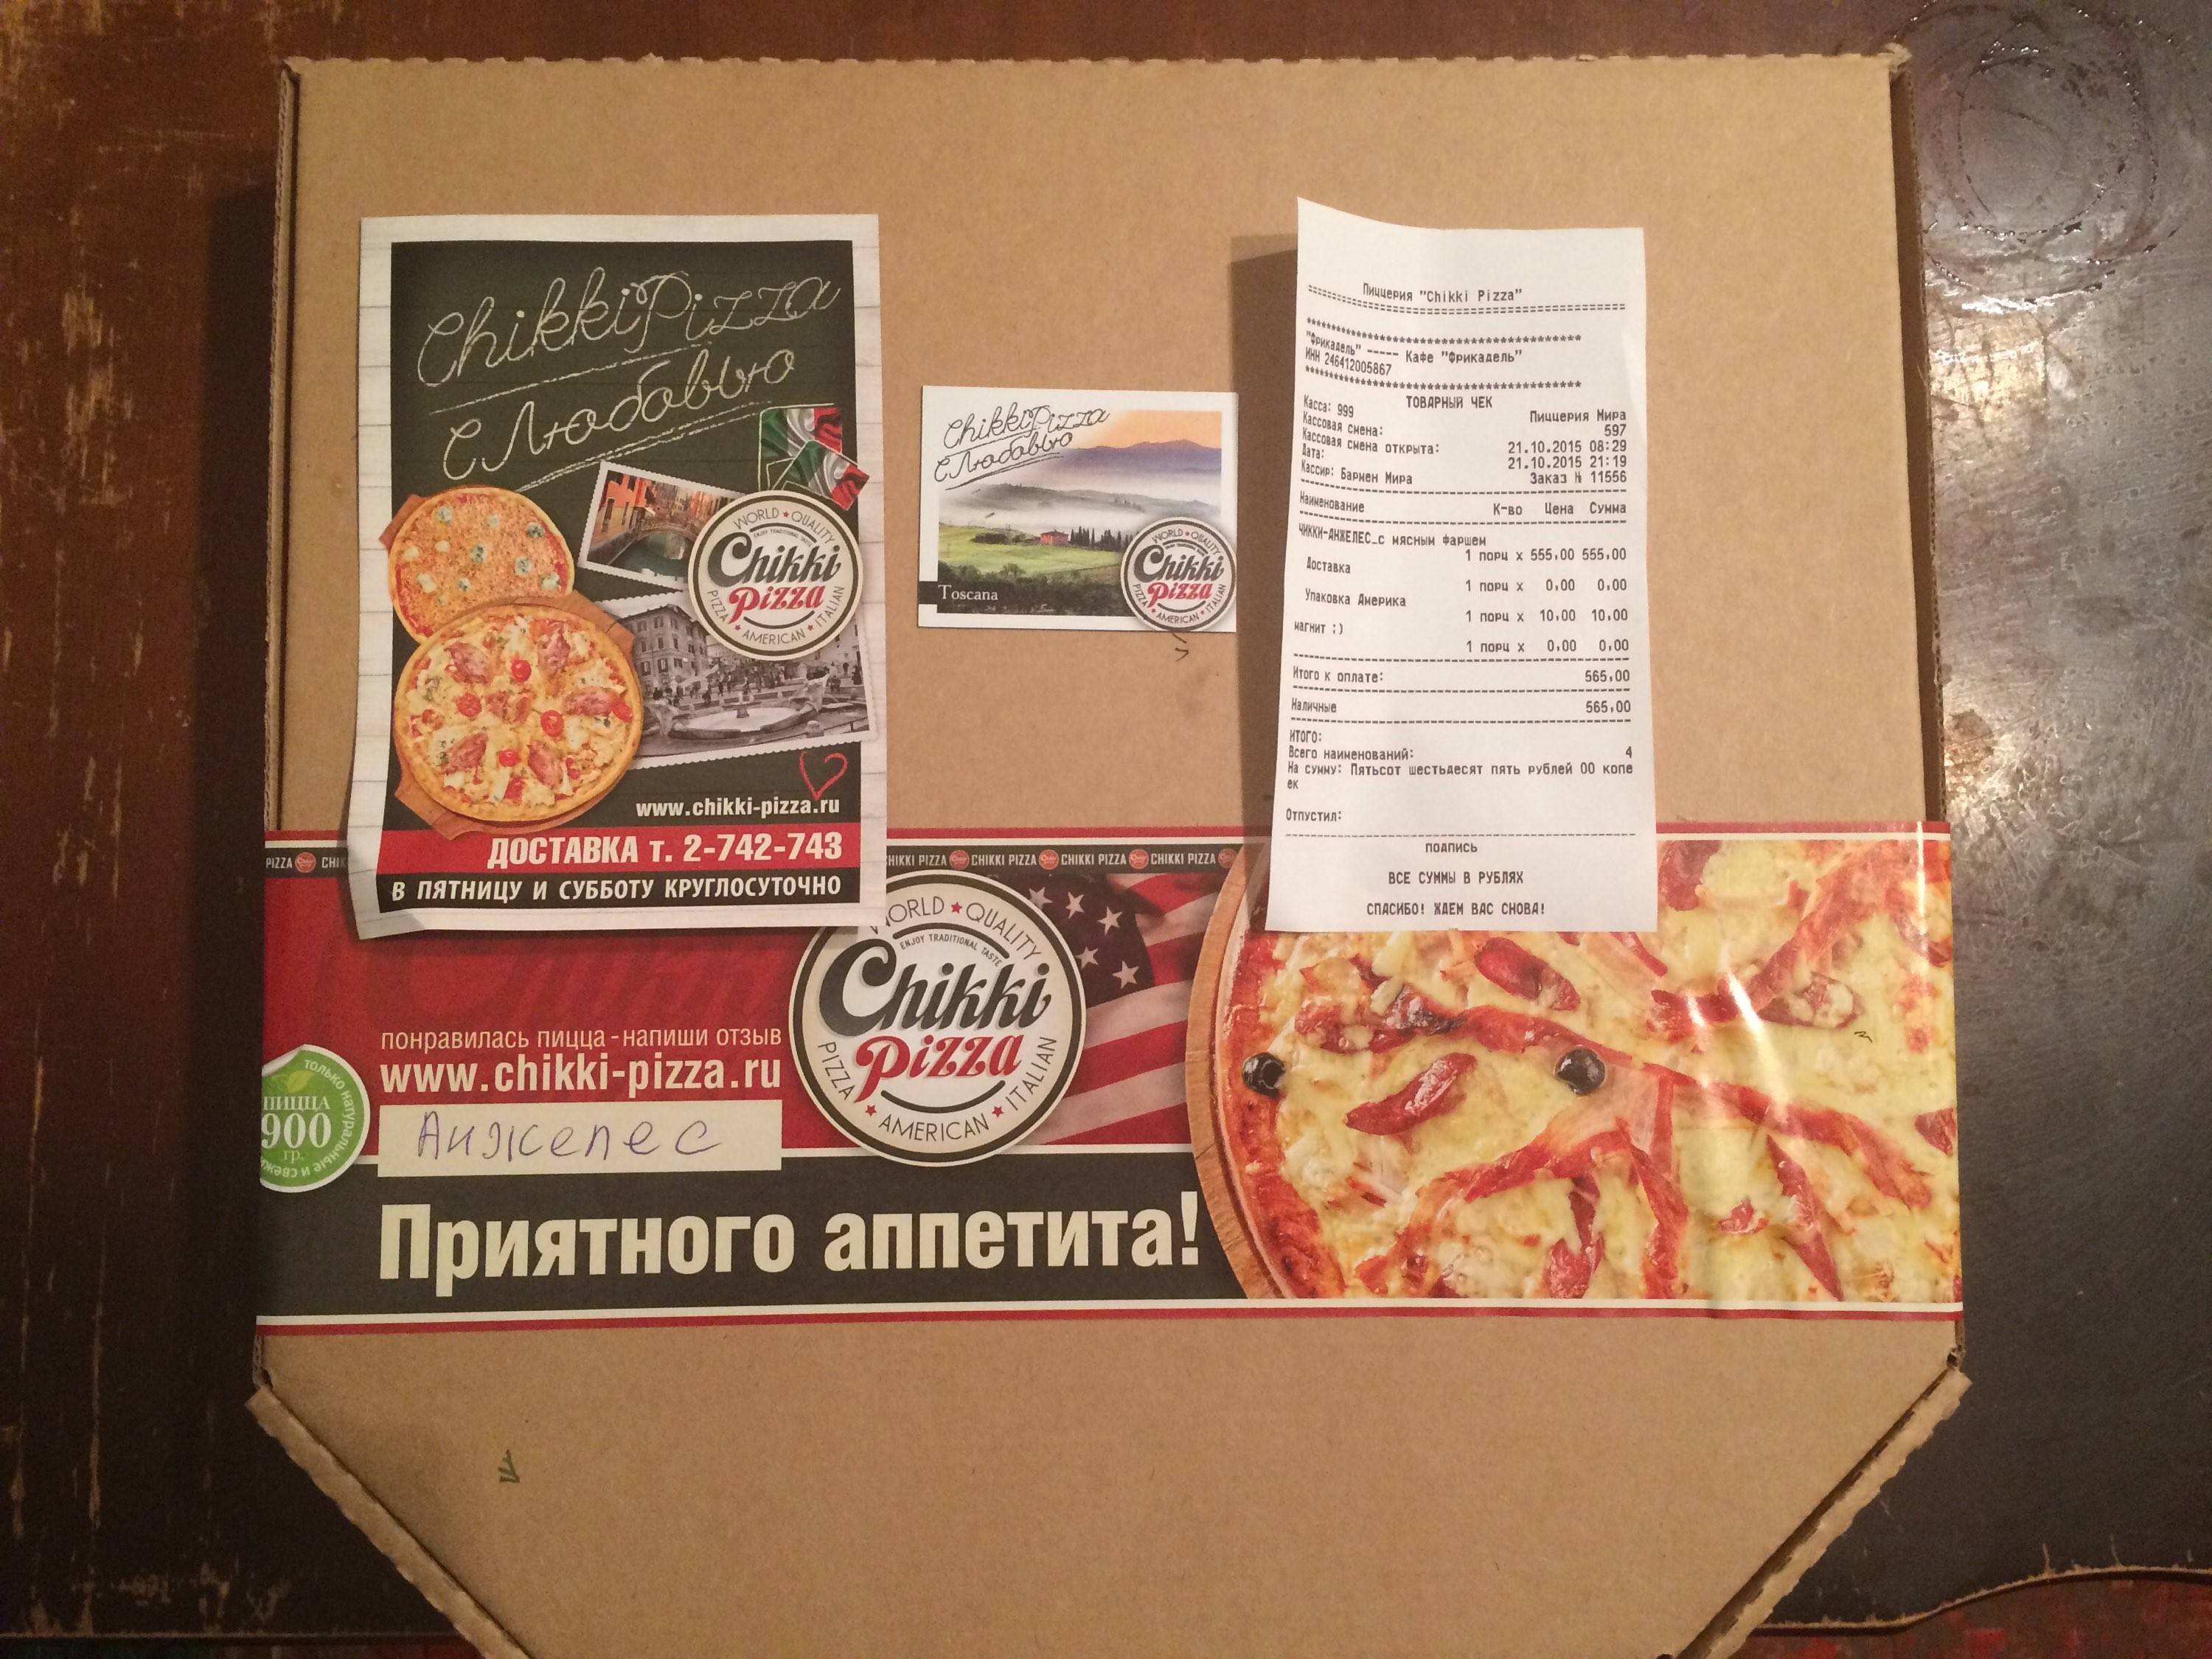 шинкаров михаил аркадьевич генеральный директор мир пиццы фото фото 22